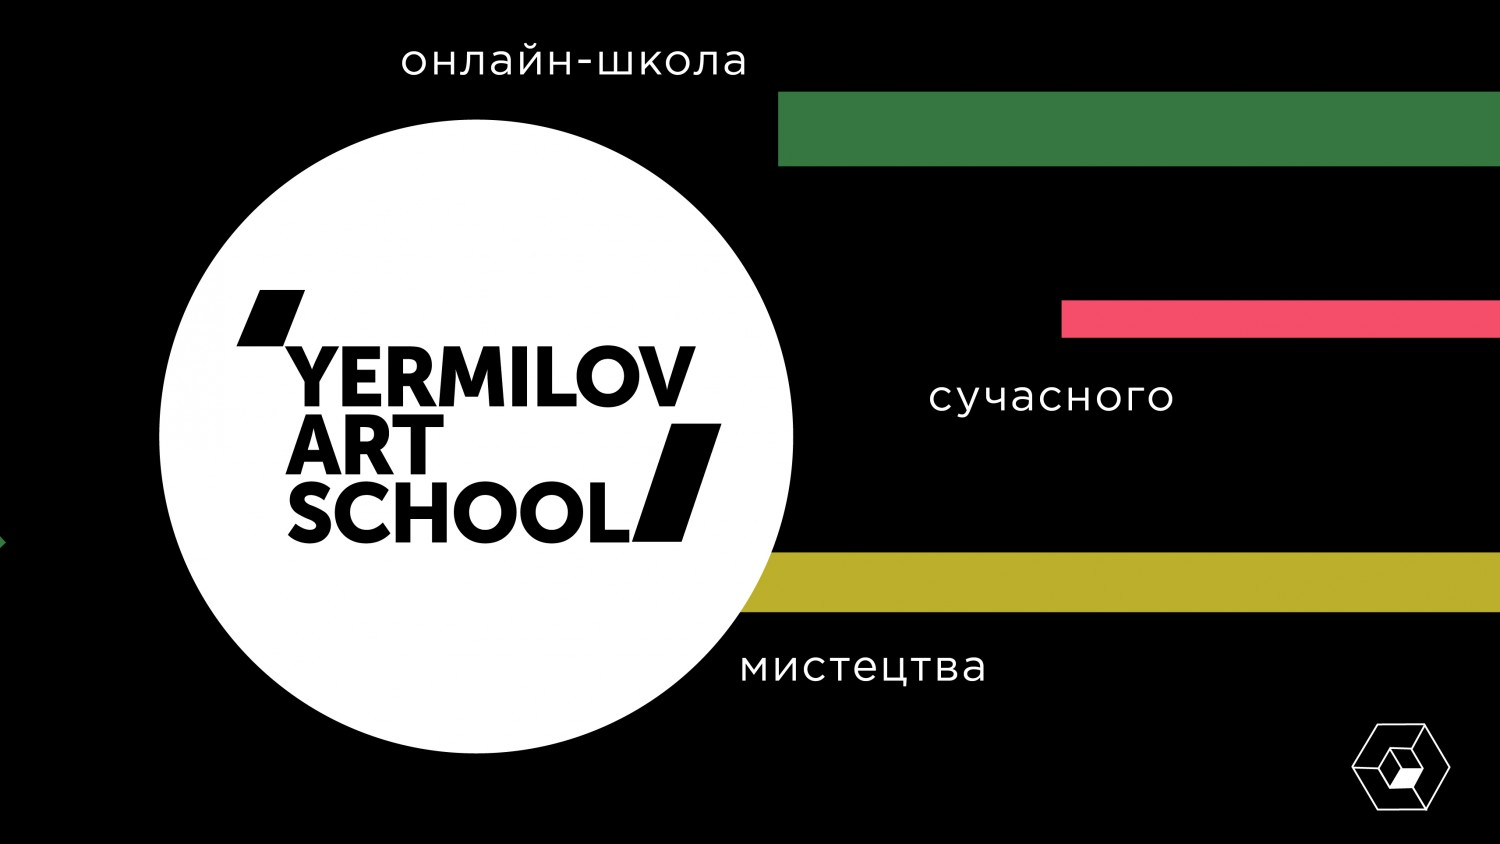 ЄрміловЦентр запустив онлайн-школу Yermilov Art School